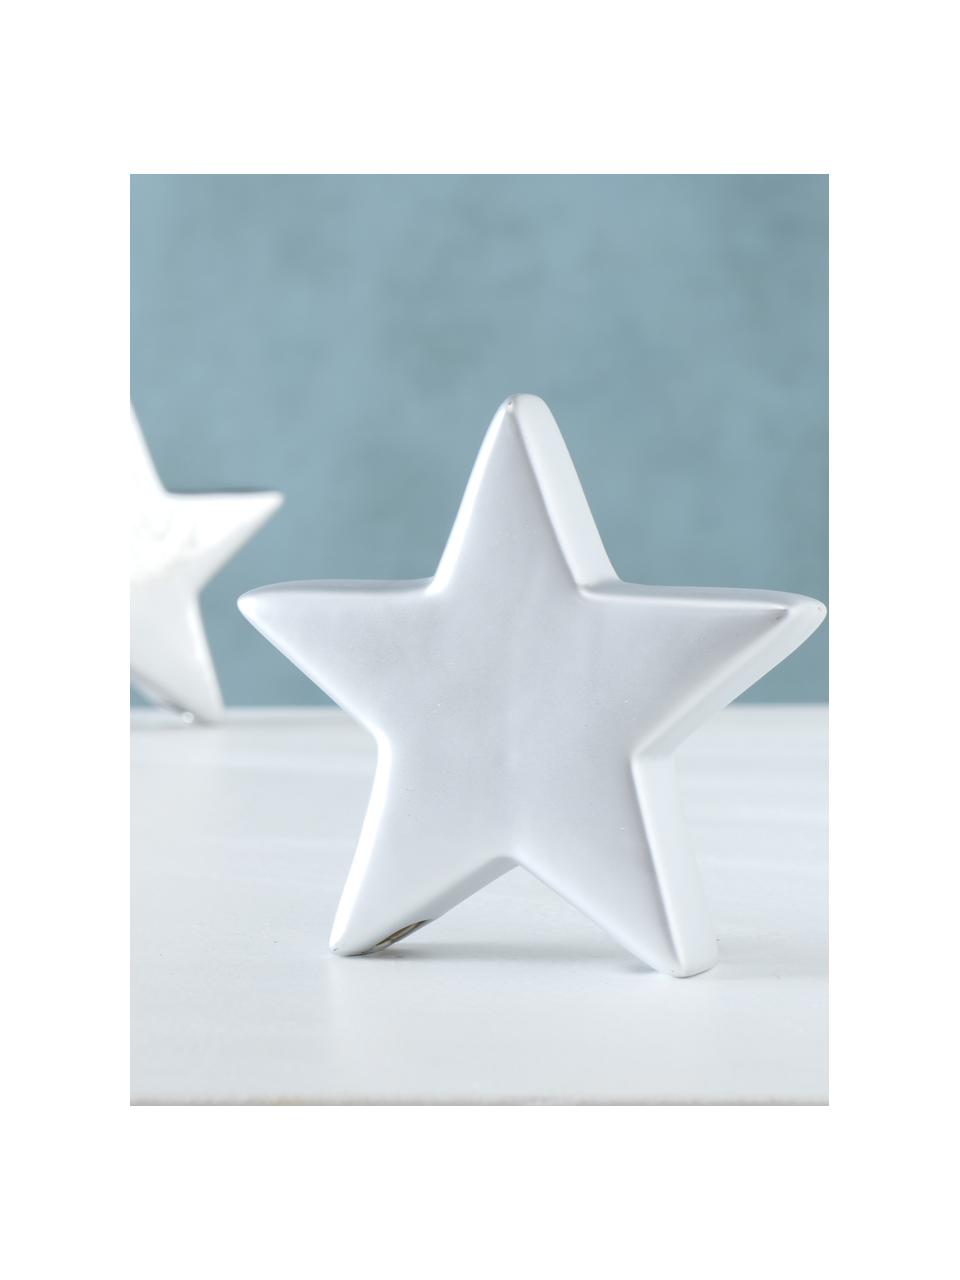 Dekorativní hvězdy Glimmy, v 14 cm, 2 ks, Keramika, Stříbrná, bílá, Š 14 cm, V 14 cm, H 3 cm